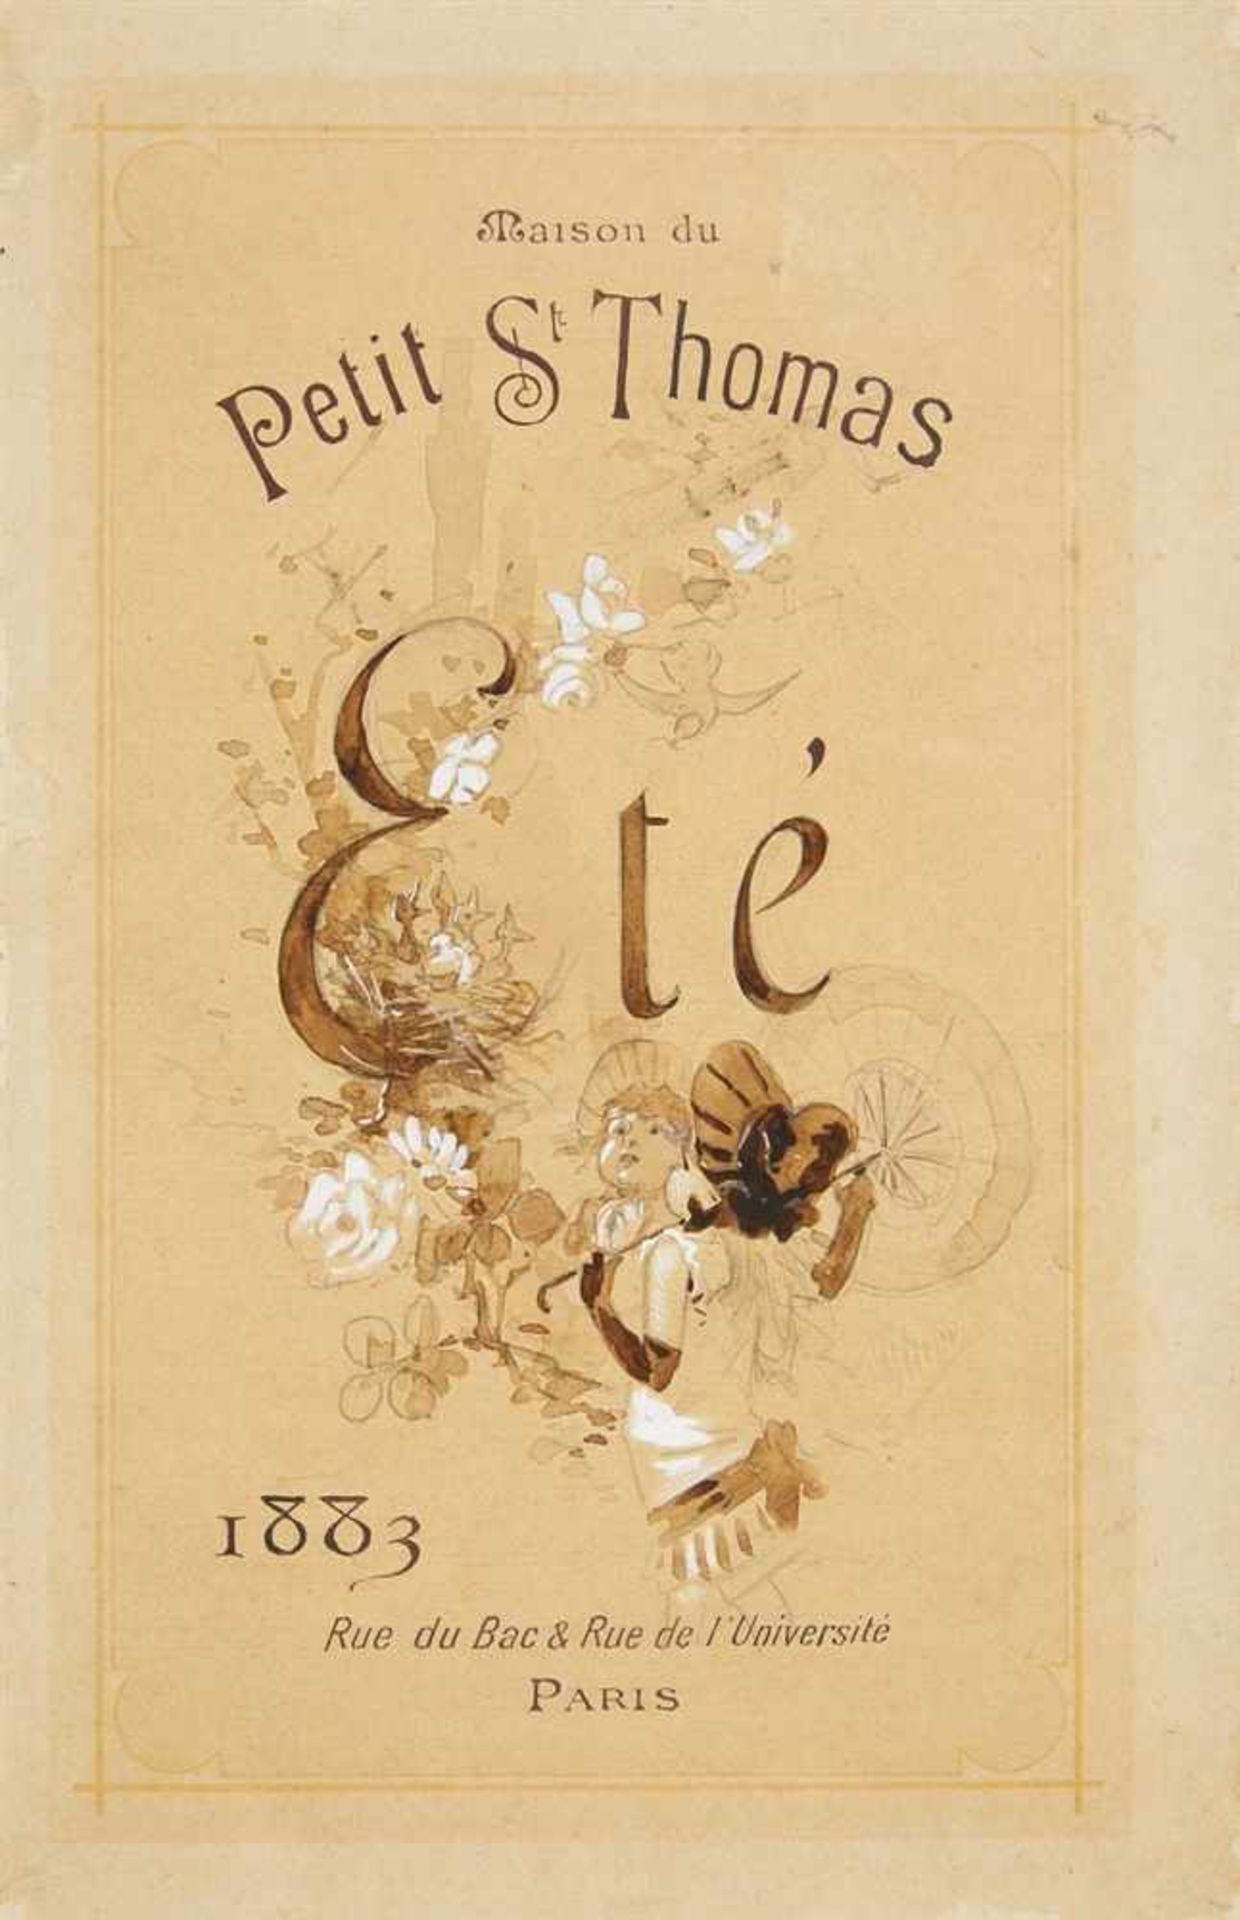 JULES CHÉRET Paris 1836 - 1932 NizzaMaison du Petit St. Thomas - Eté - Rue du Bac & Rue de l'